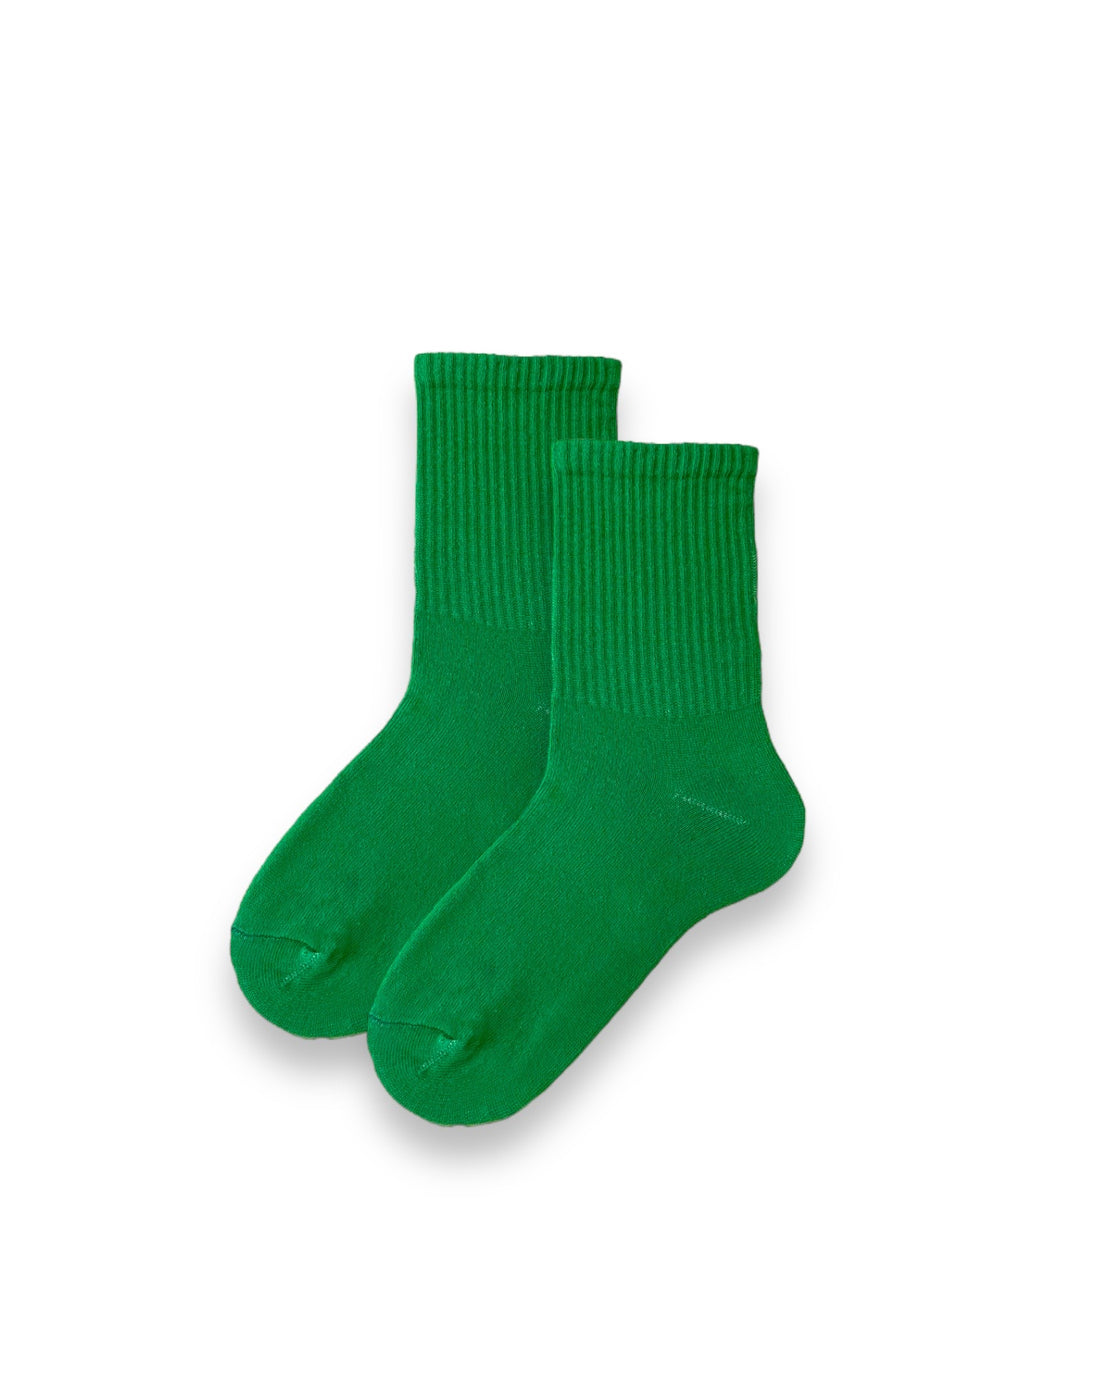 Düz Yeşil Unisex Çorap